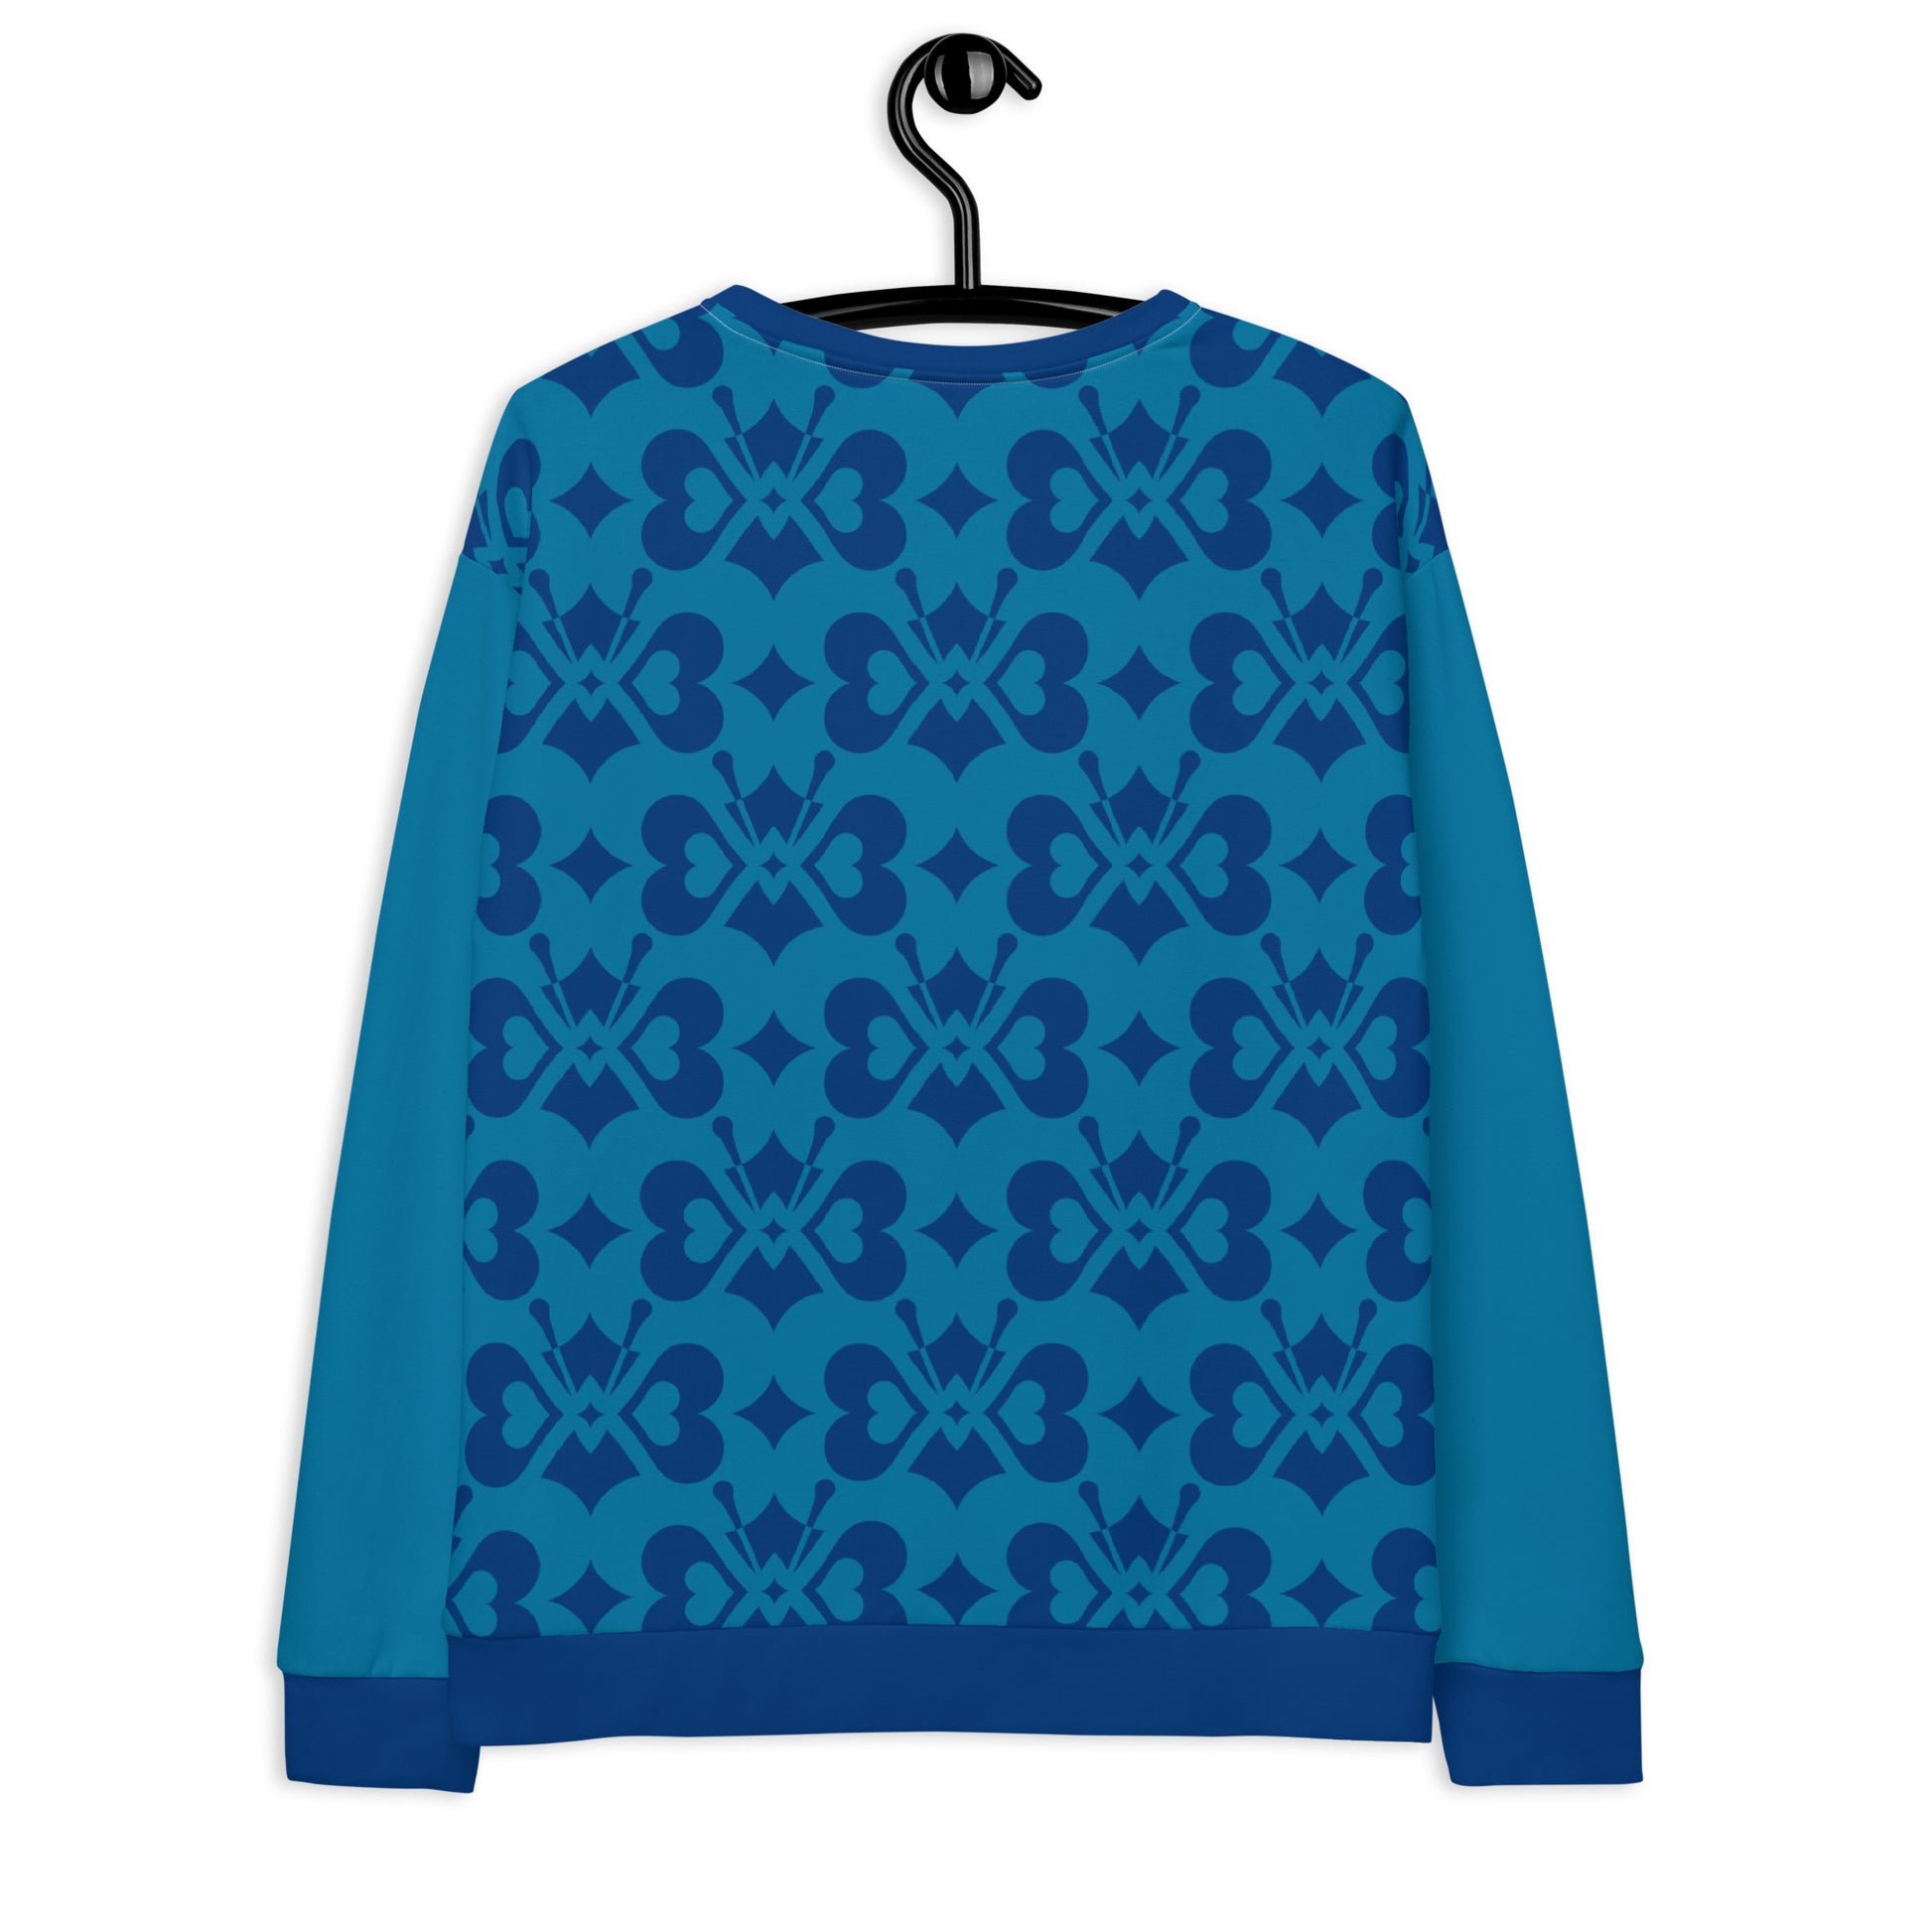 LOVE BUTTERFLY all blue - Unisex Sweatshirt